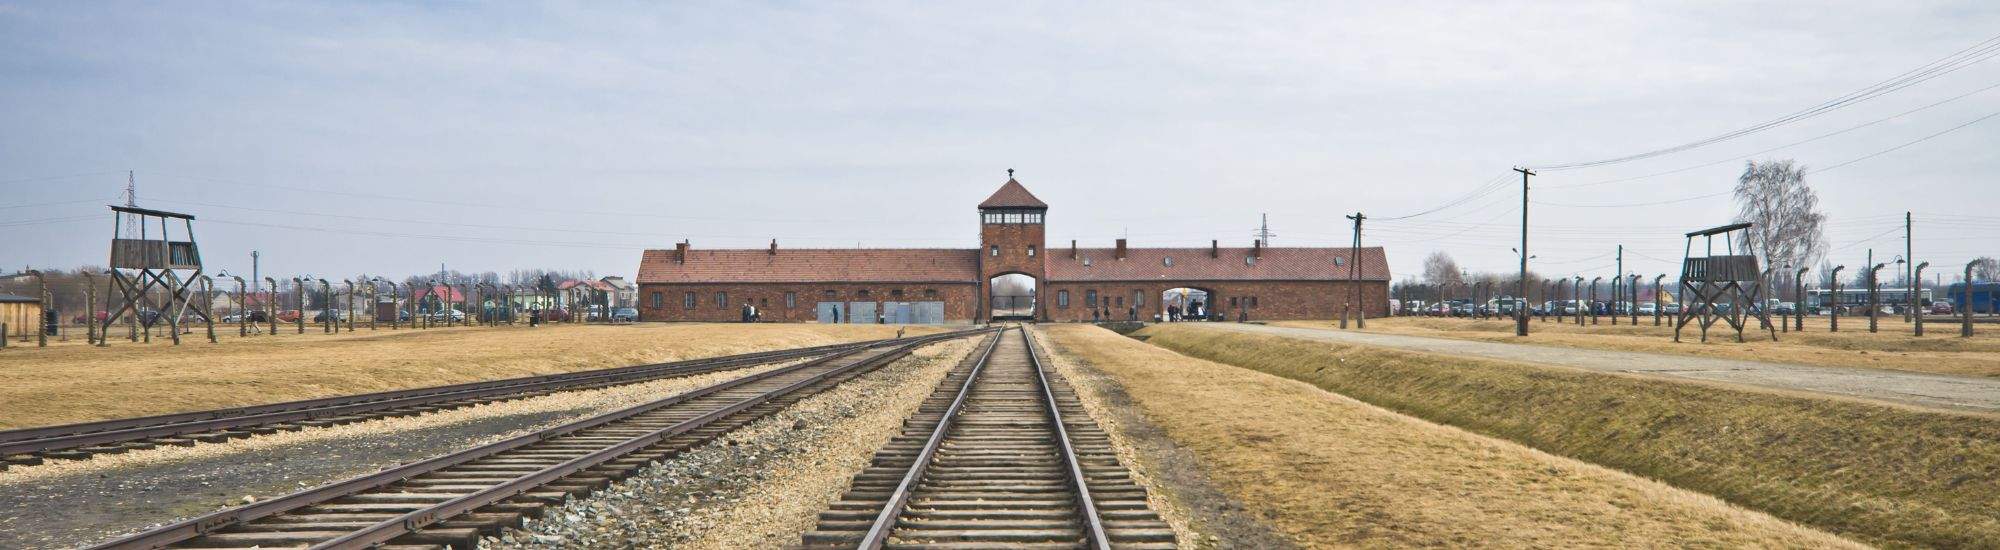 USA unterstützt virtuellen Rundgang durch Auschwitz-Birkenau